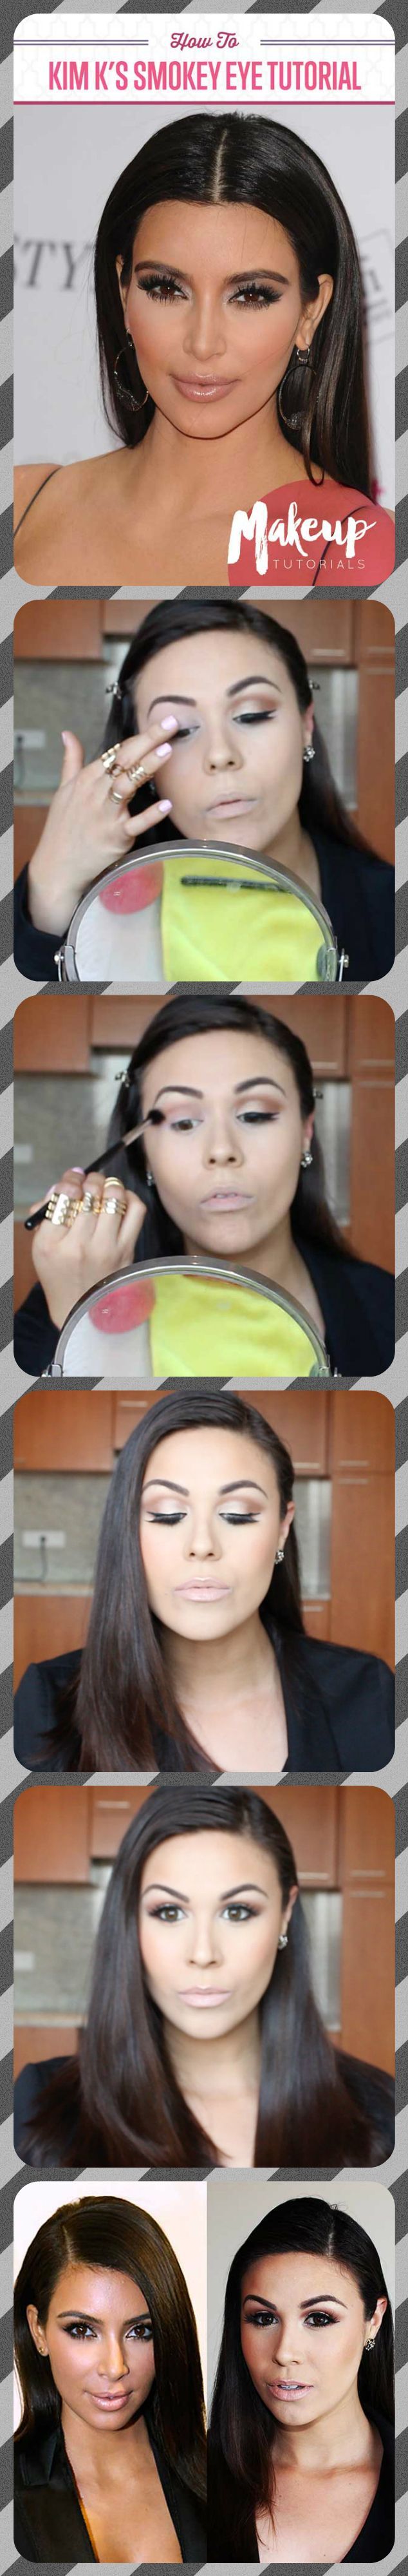 How To Nail Kim Kardashian Makeup | Easy Smokey Eye and Contouring Tutorial For ...